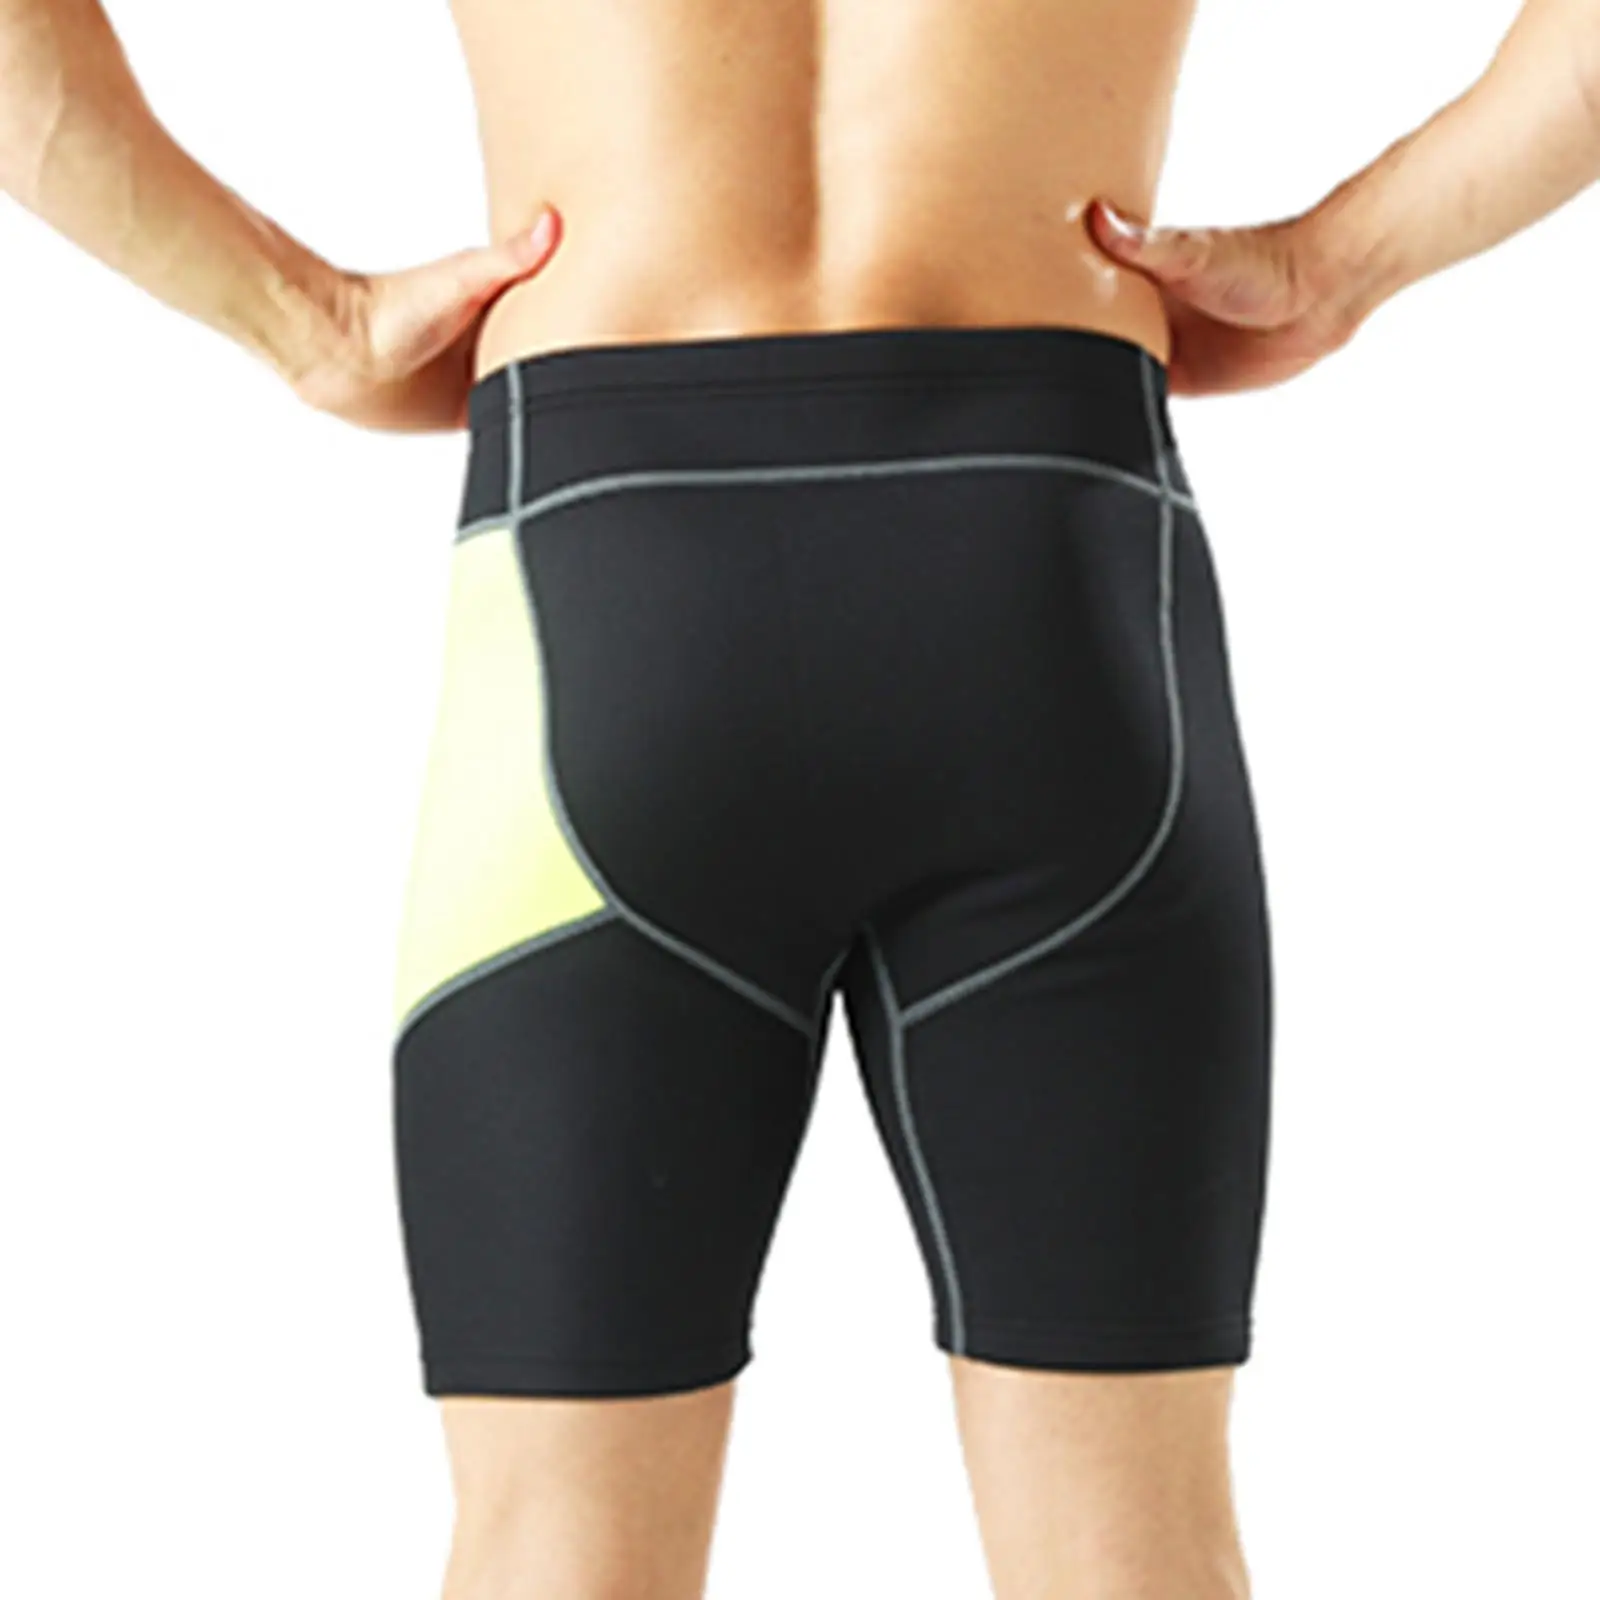 Мъжки неопренови шорти с дебелина 2 мм, за топене на неопрен за водна аеробика, спортни панталони за неопрен - 4